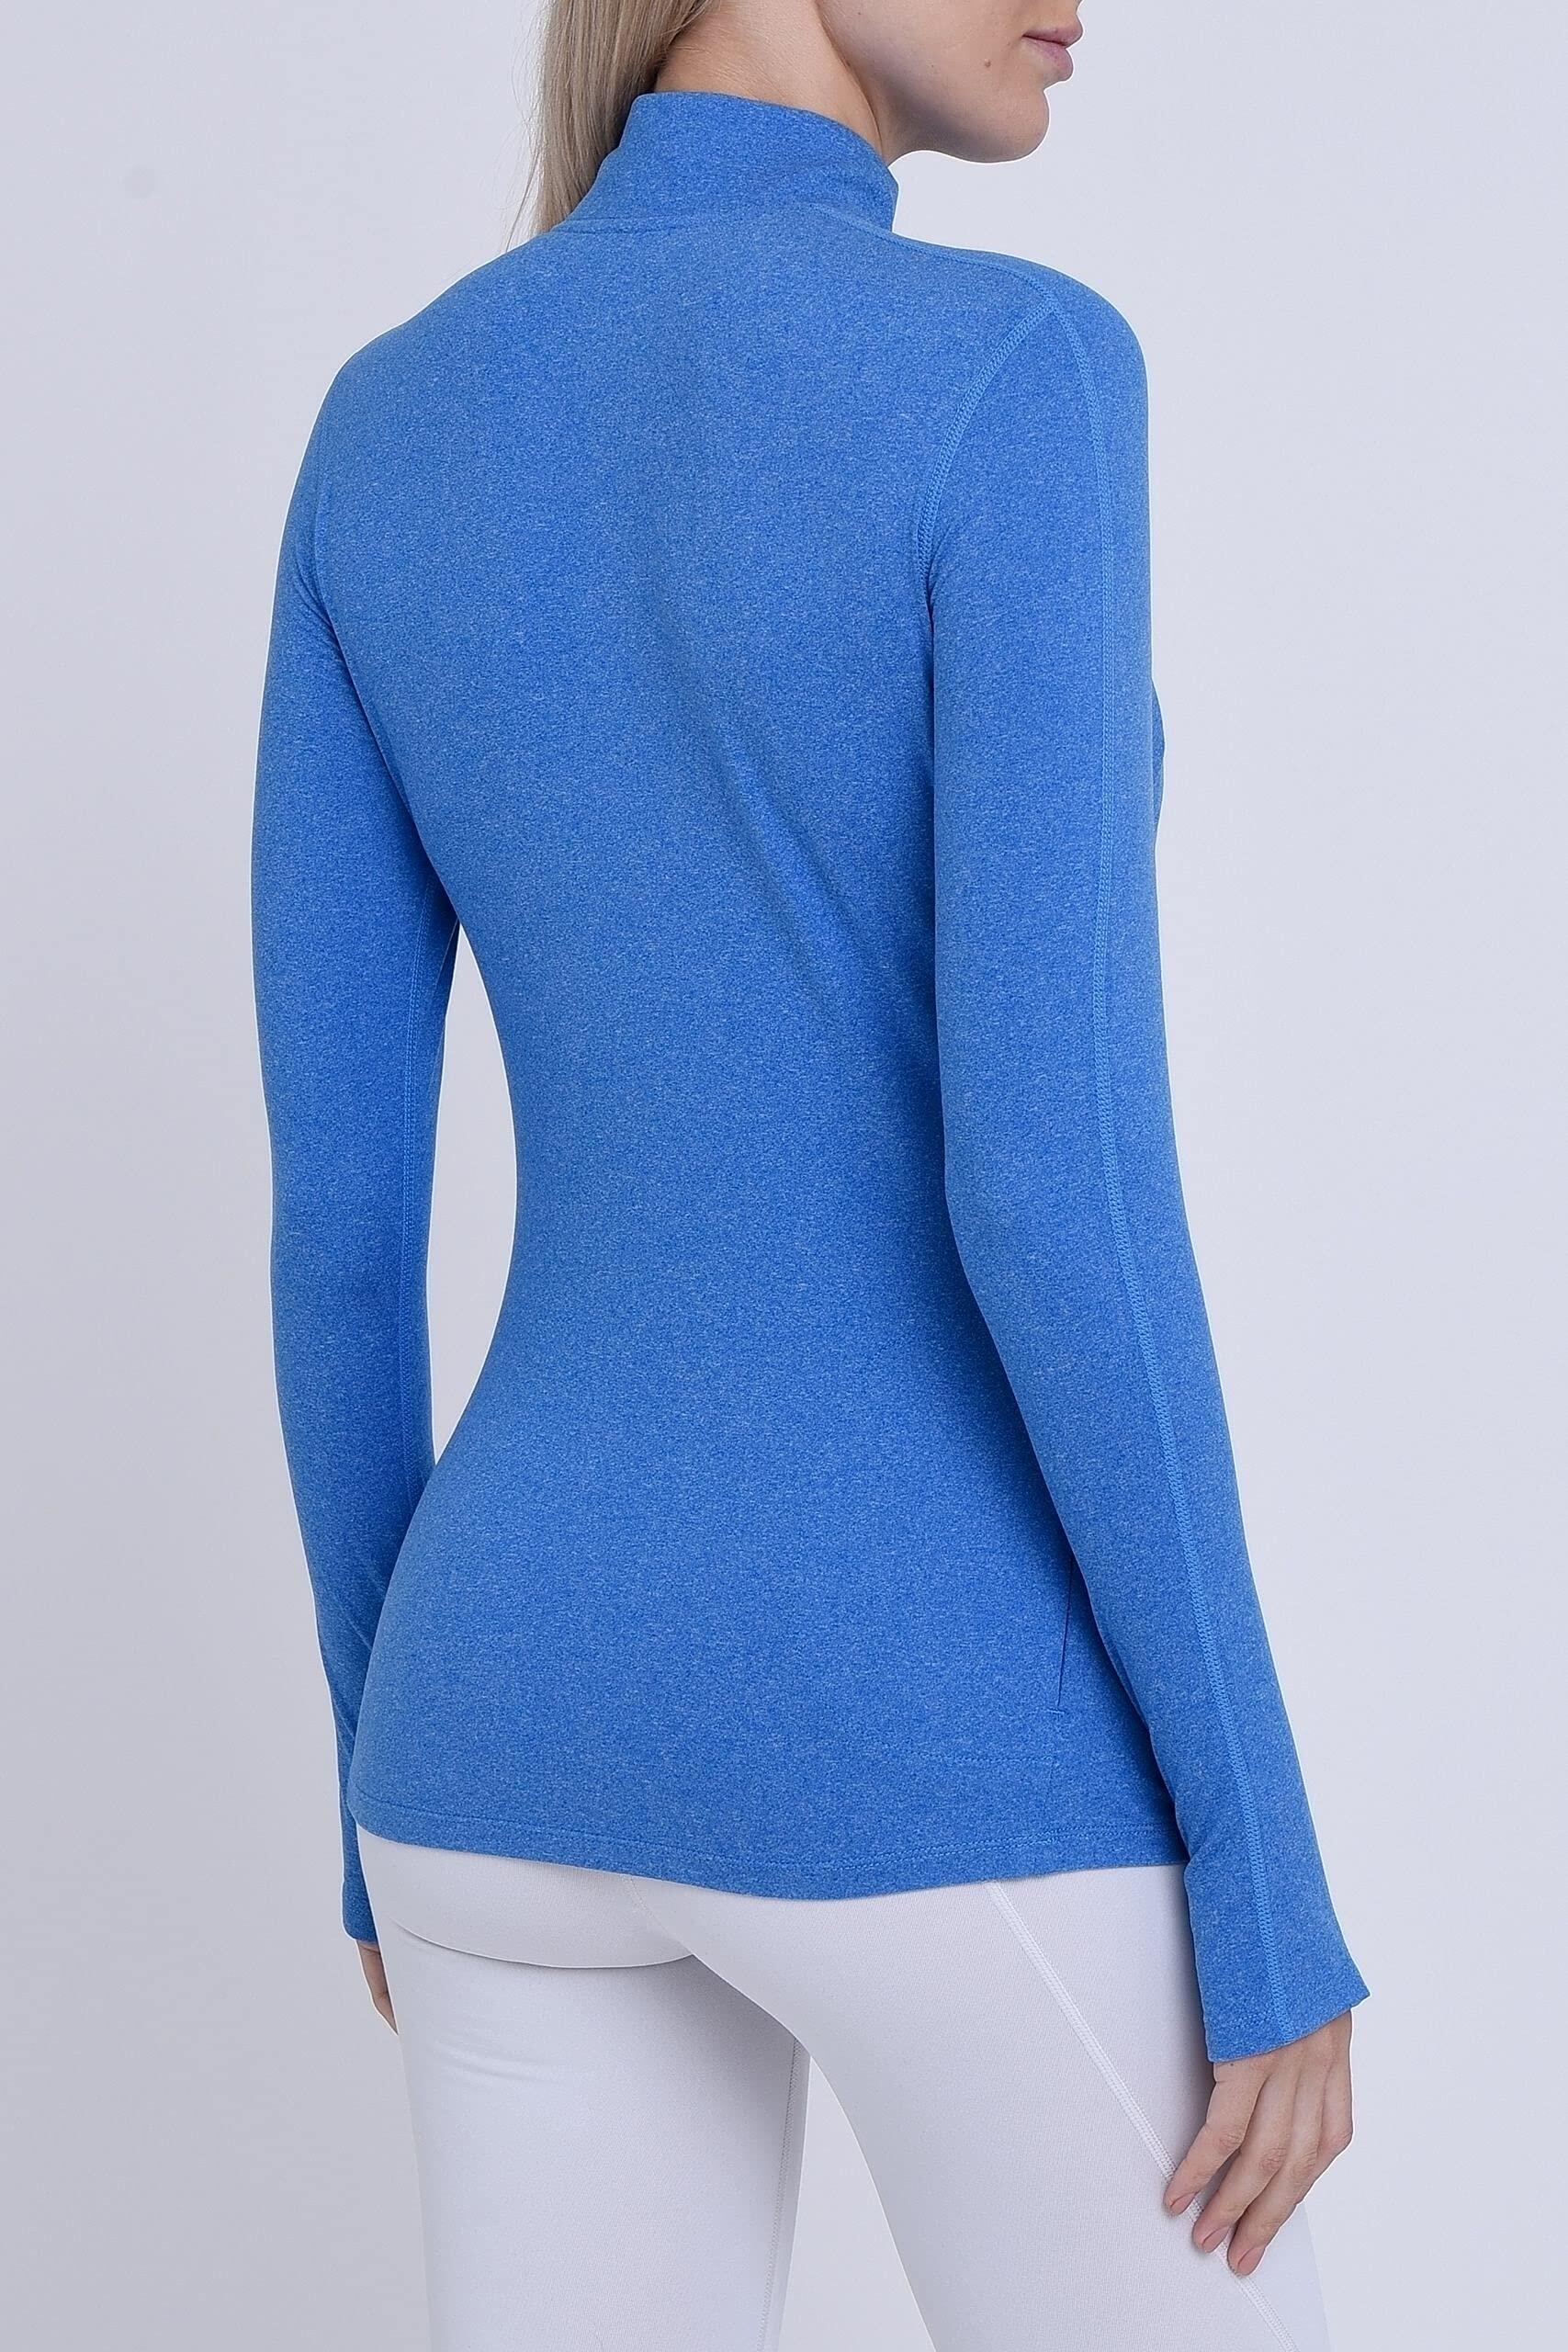 Women's All Season Long Sleeve Running Top - Blue Azure Heather 2/5